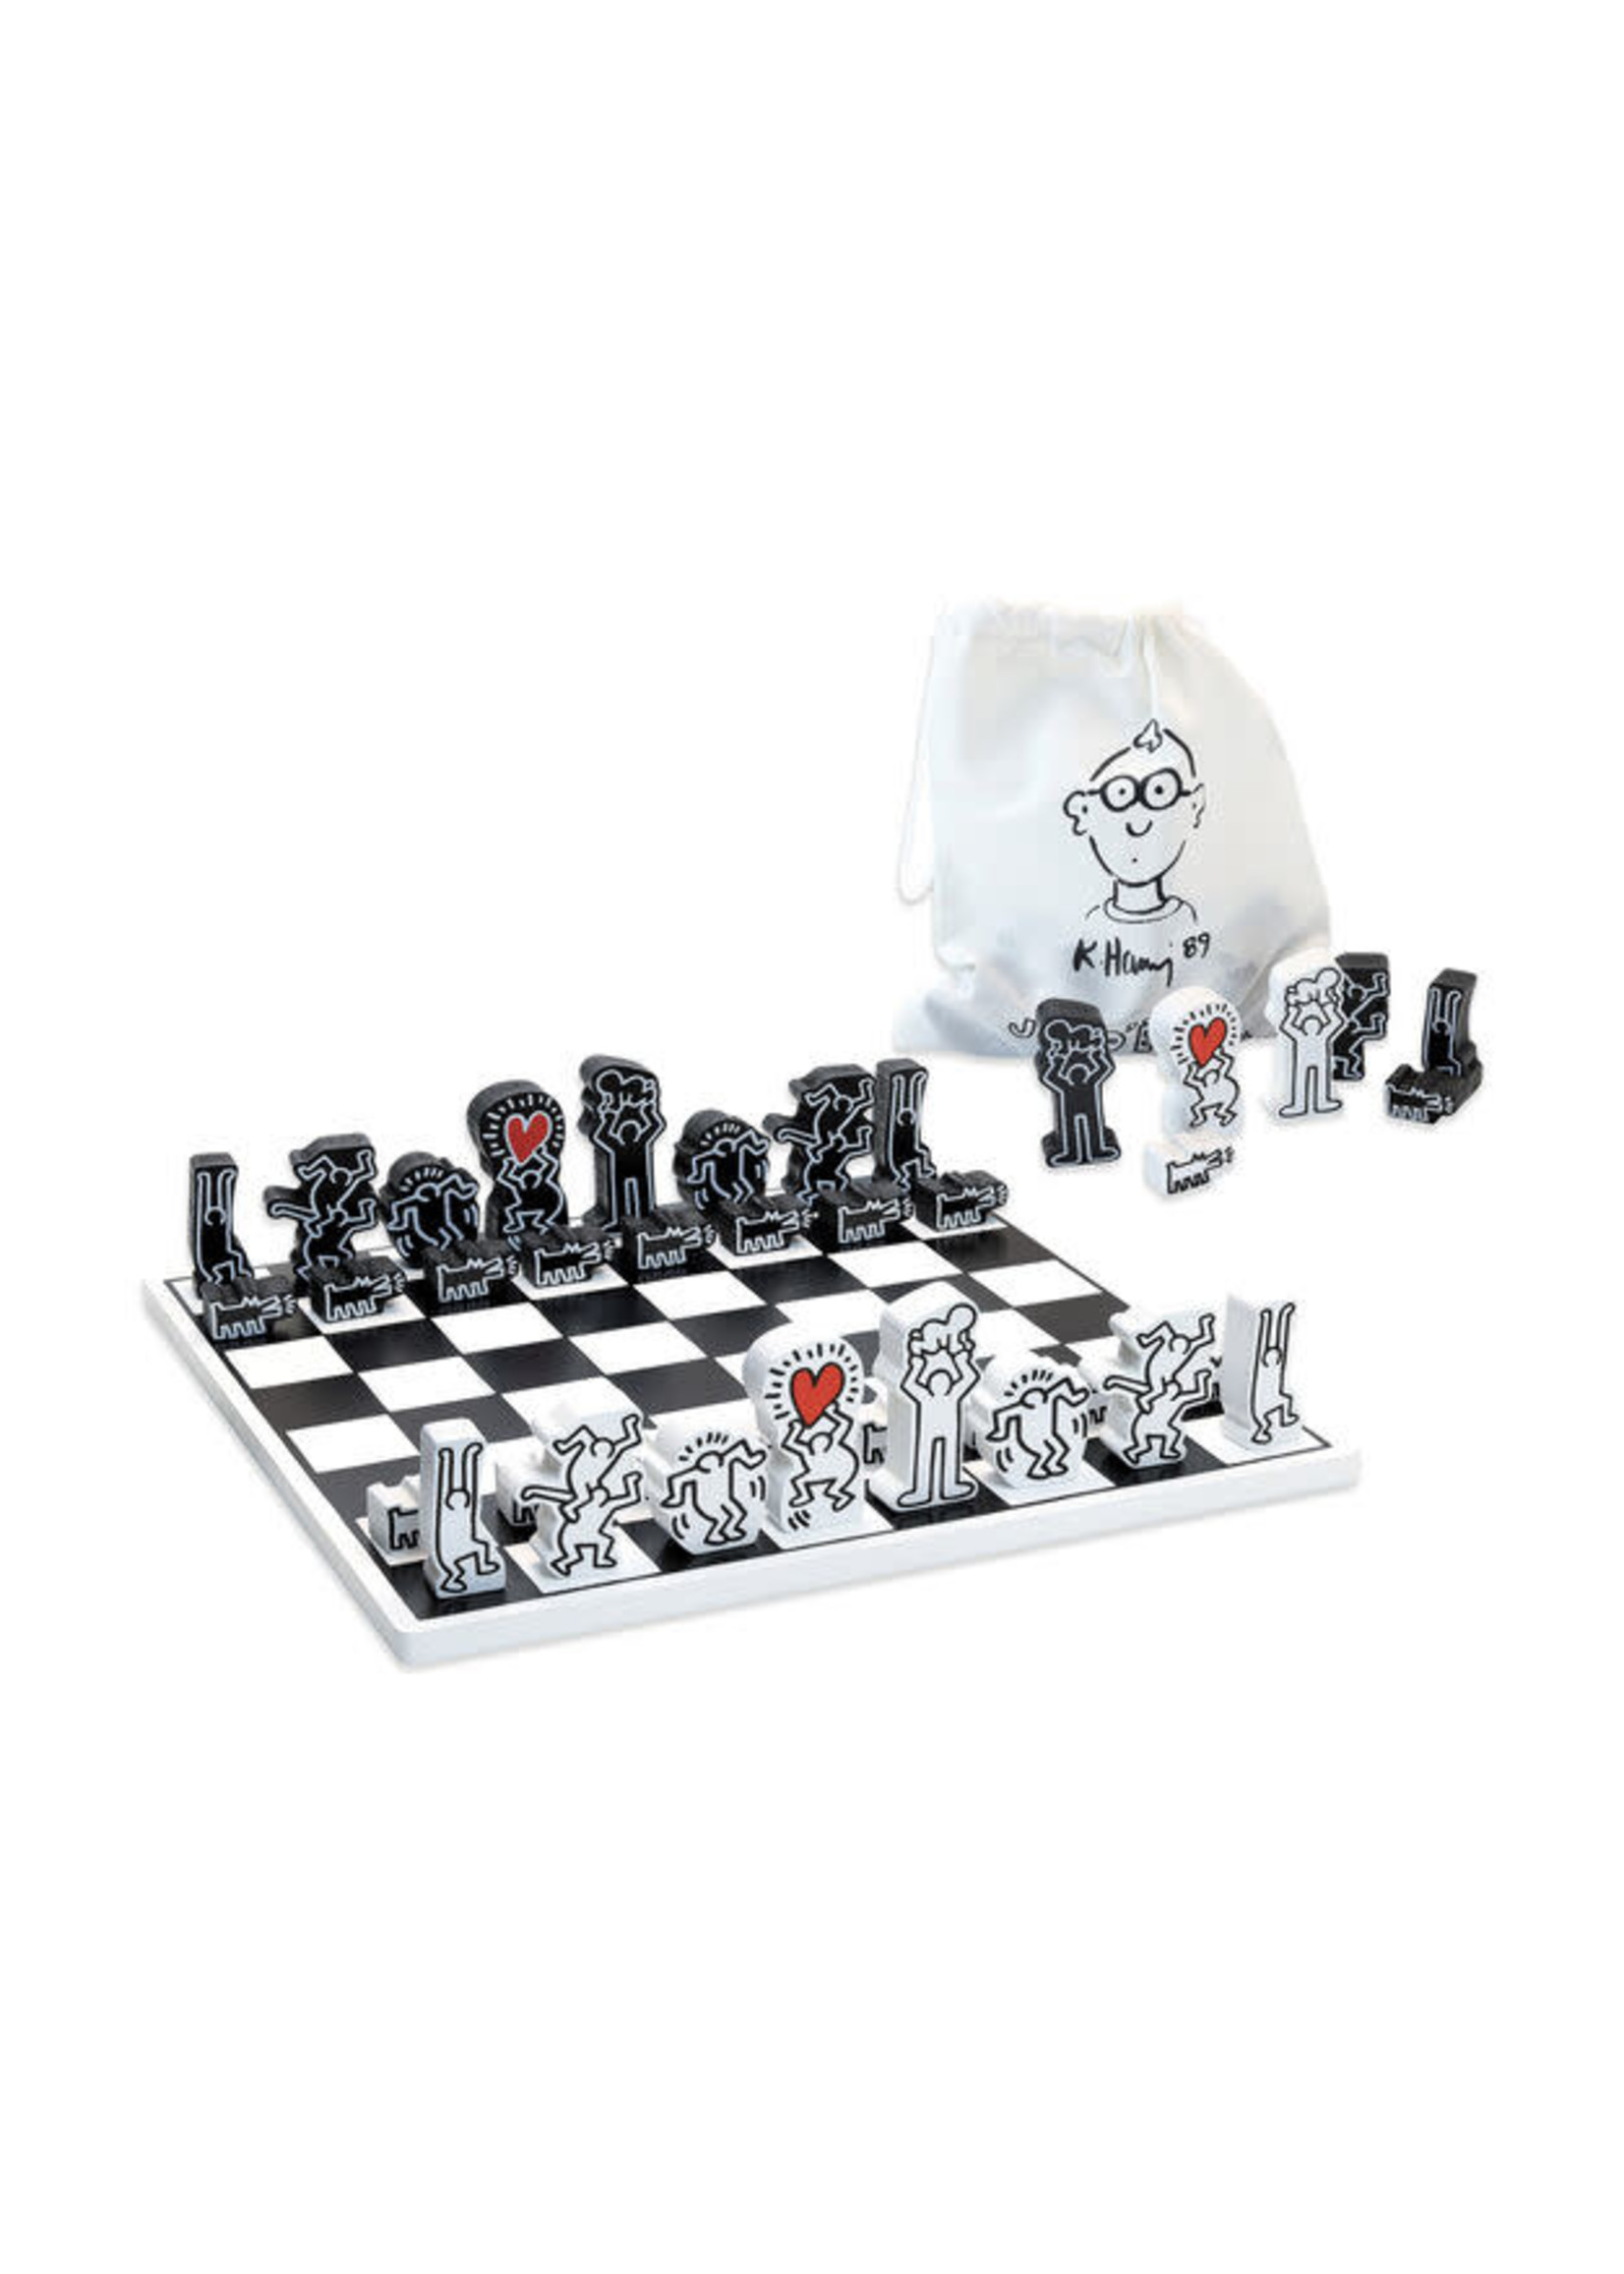 Vilac Keith Haring Chess Set